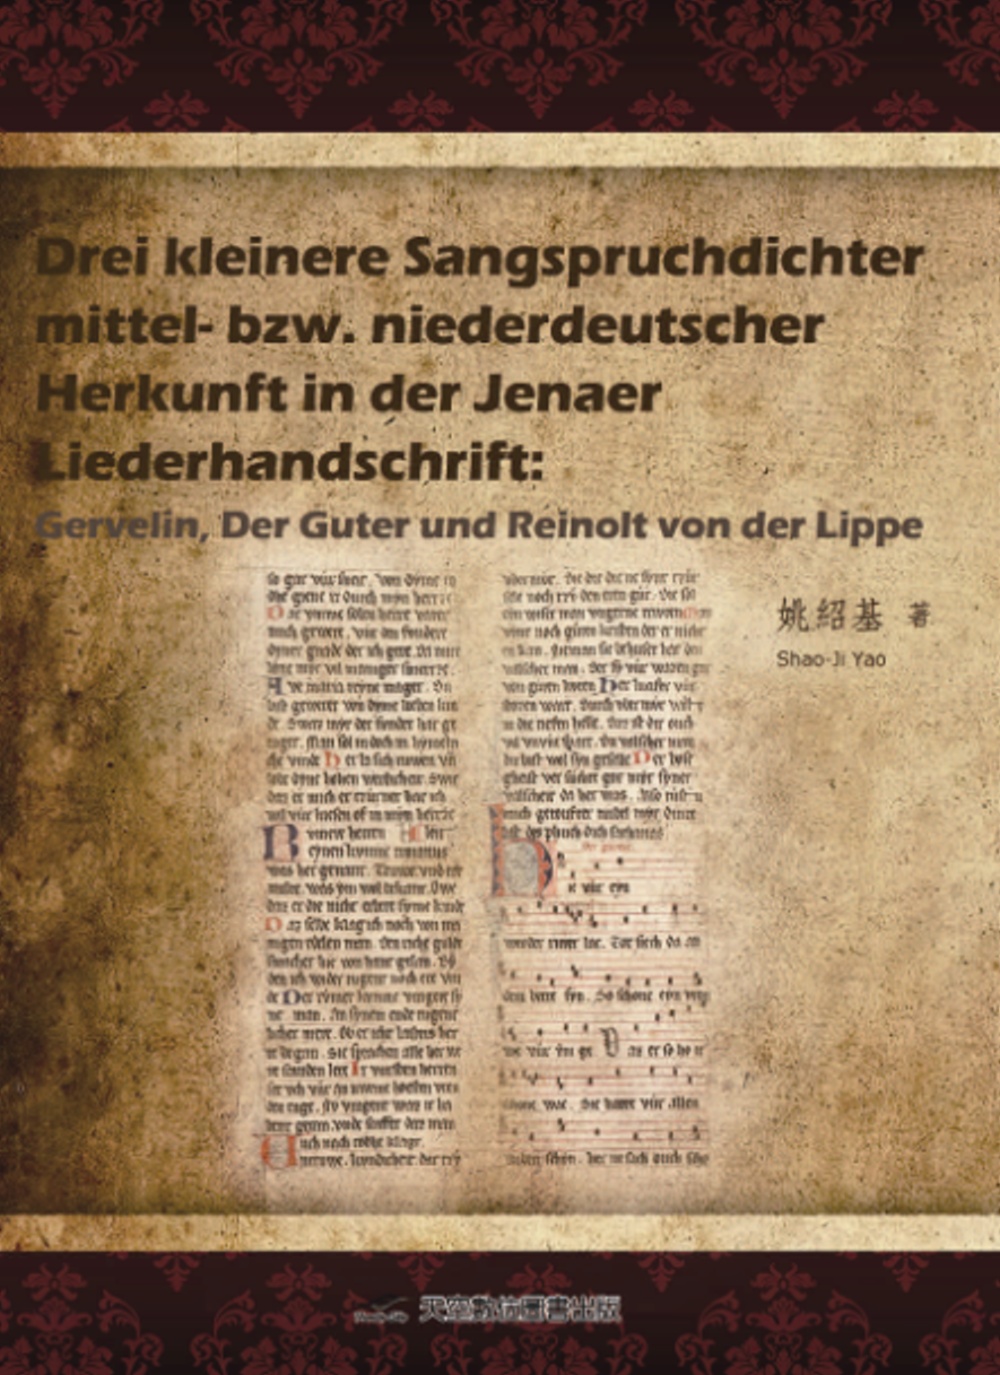 Drei kleinere Sangspruchdichter mittel-bzw. niederdeutscher Herkunft in der Jenaer Liederhandschrift: Gervelin, Der Gute